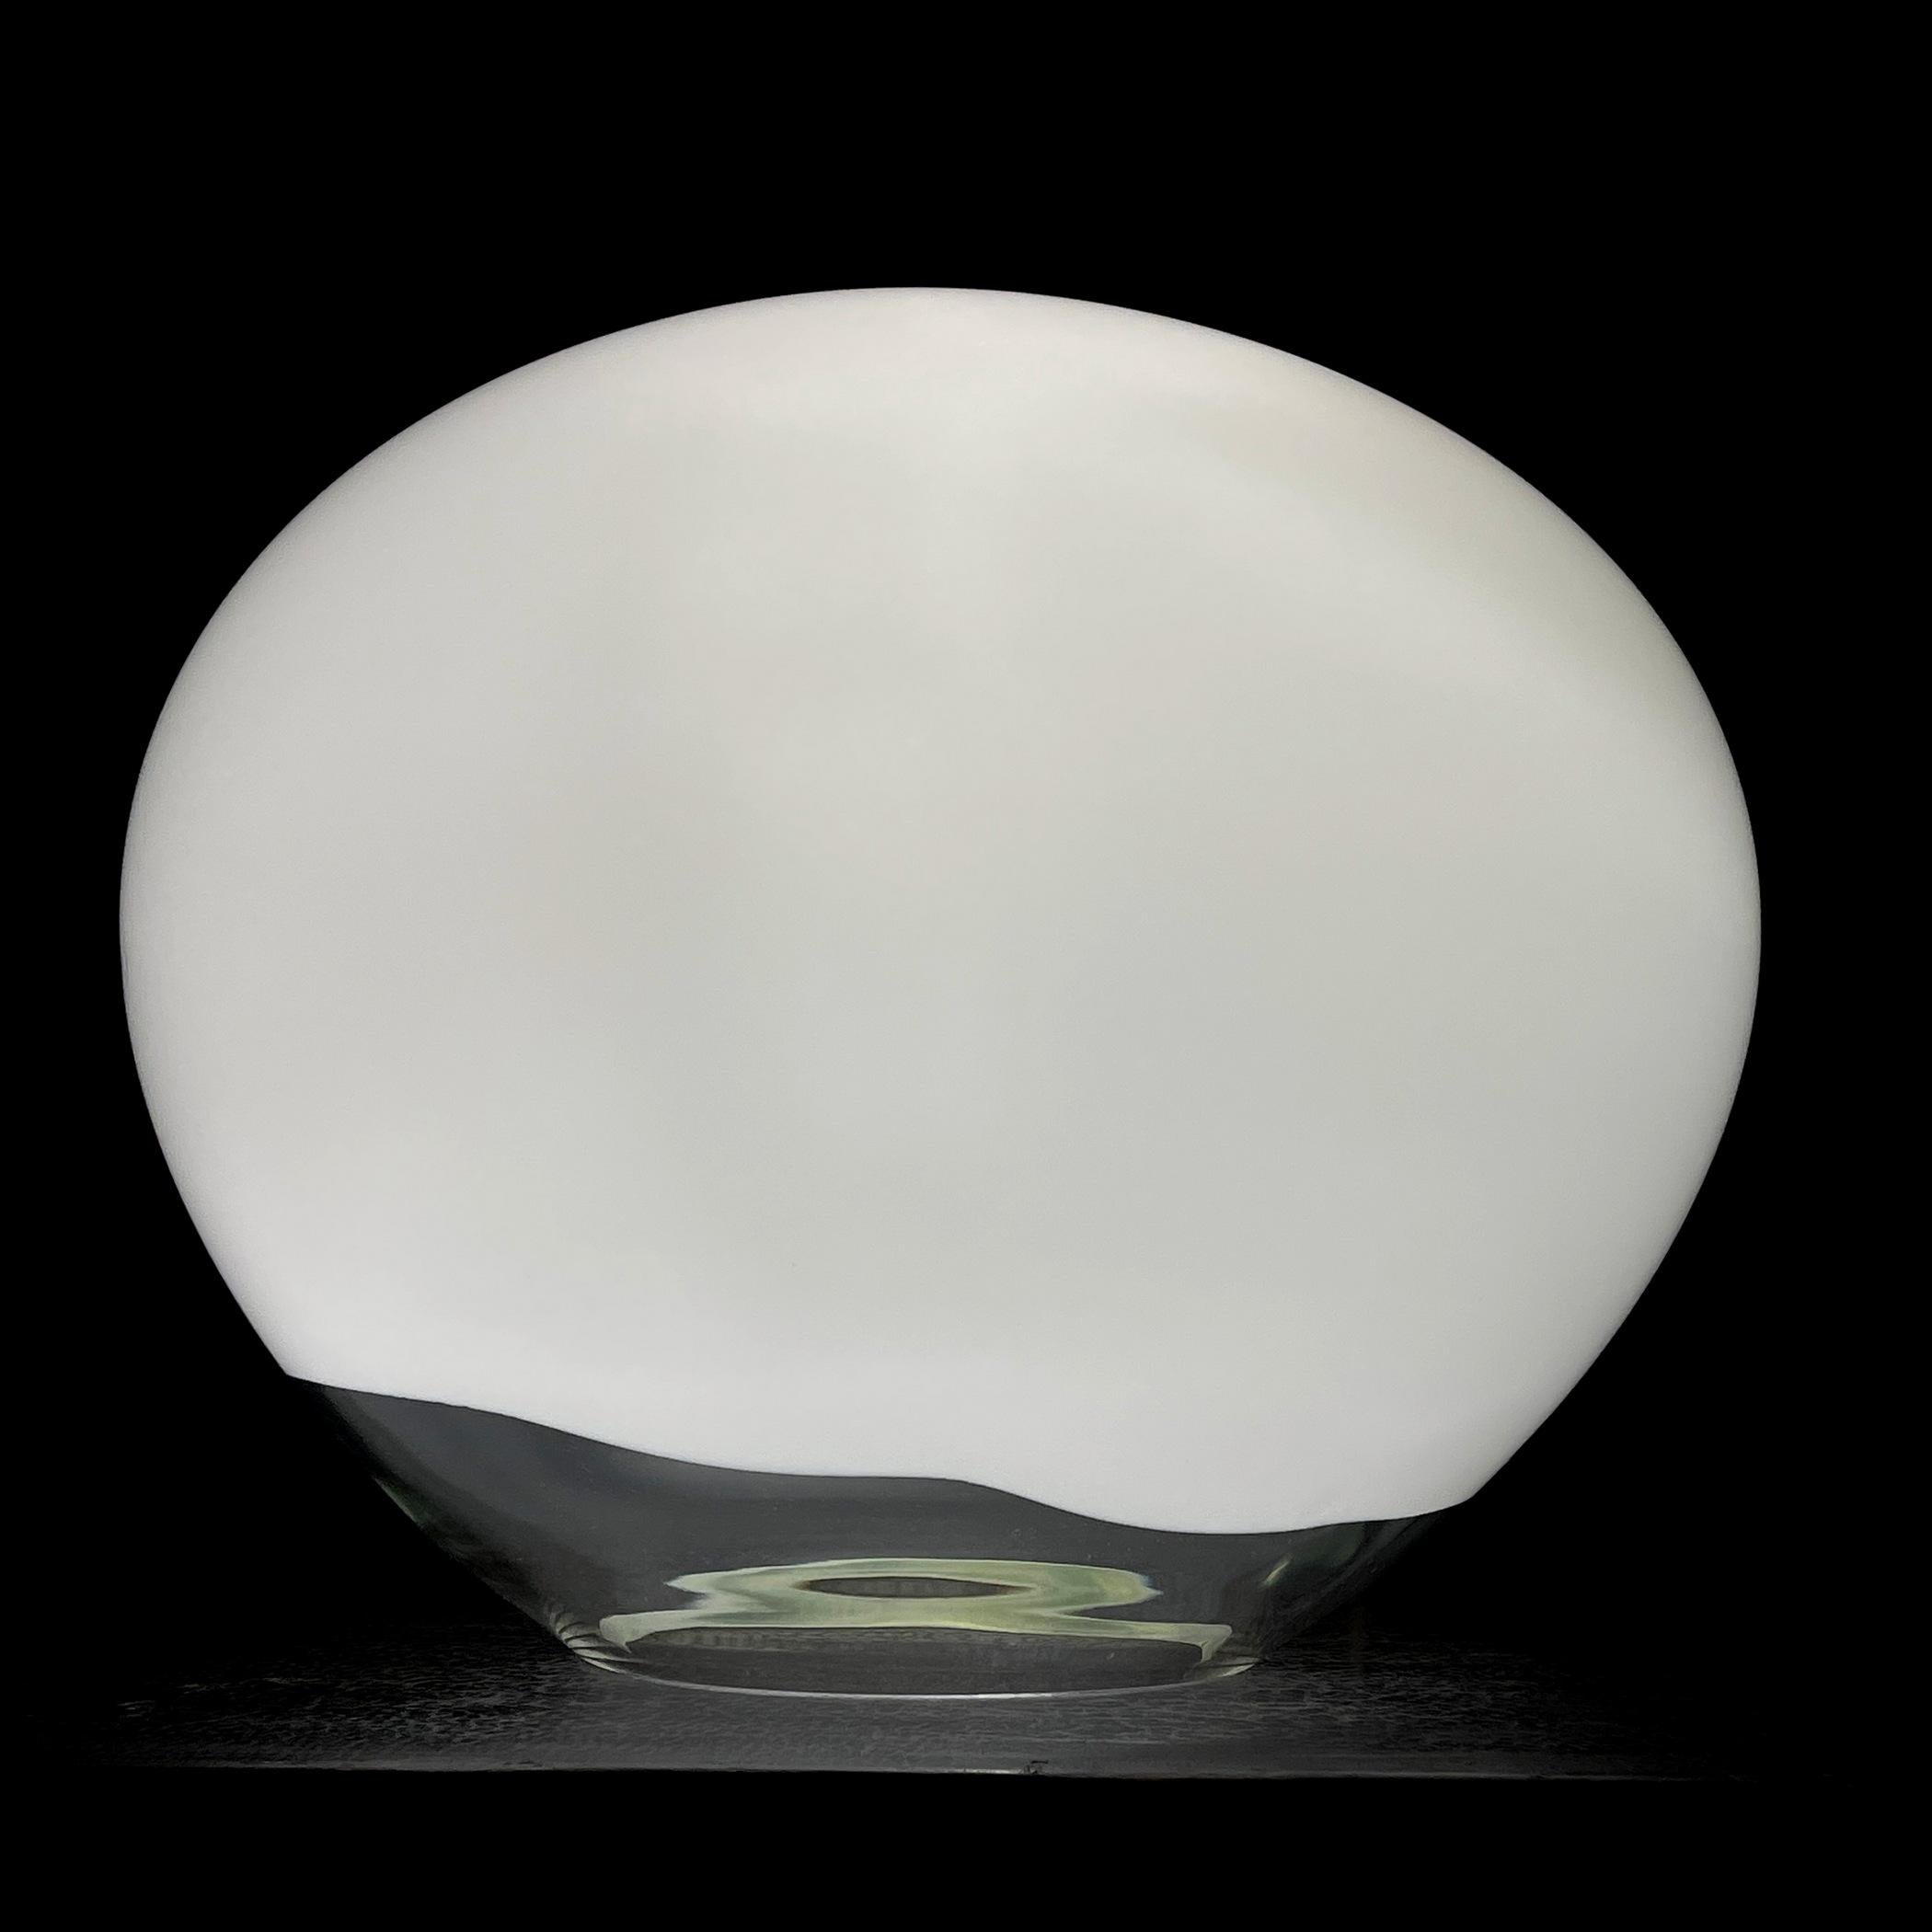 Découvrez le design unique de la lampe à poser Nessa, qui séduit par sa beauté exquise et son style non conventionnel. Fabriquée à la main à partir de différentes nuances de verre de Murano, cette lampe ressemble visuellement à un cercle allongé.